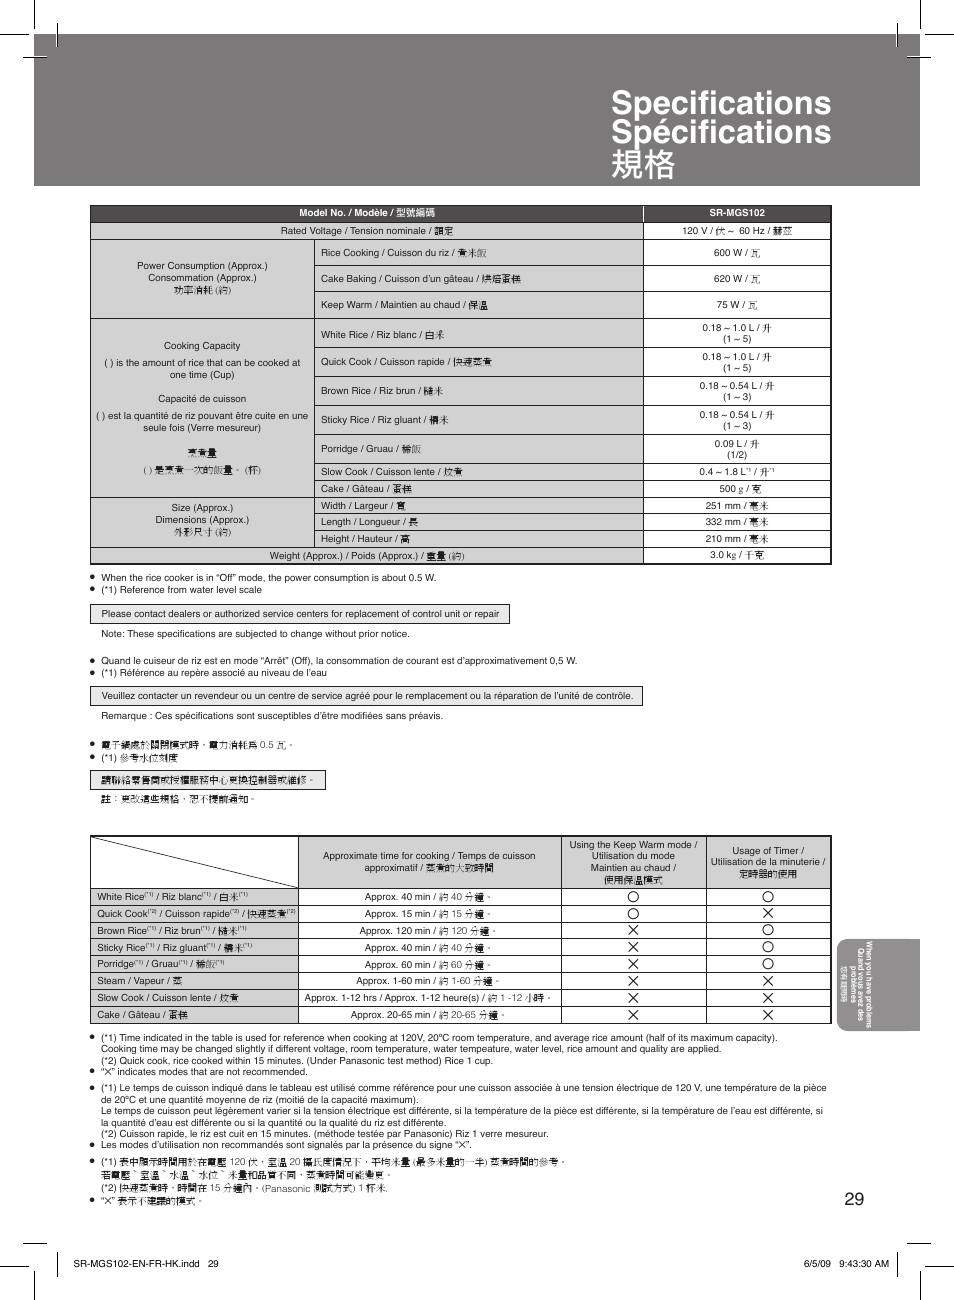 Spécifications, Troubleshooting guide de dépannage, Speciﬁcations spéciﬁcations 規格 | Panasonic SR-MGS102 Manuel d'utilisation | Page 29 / 32